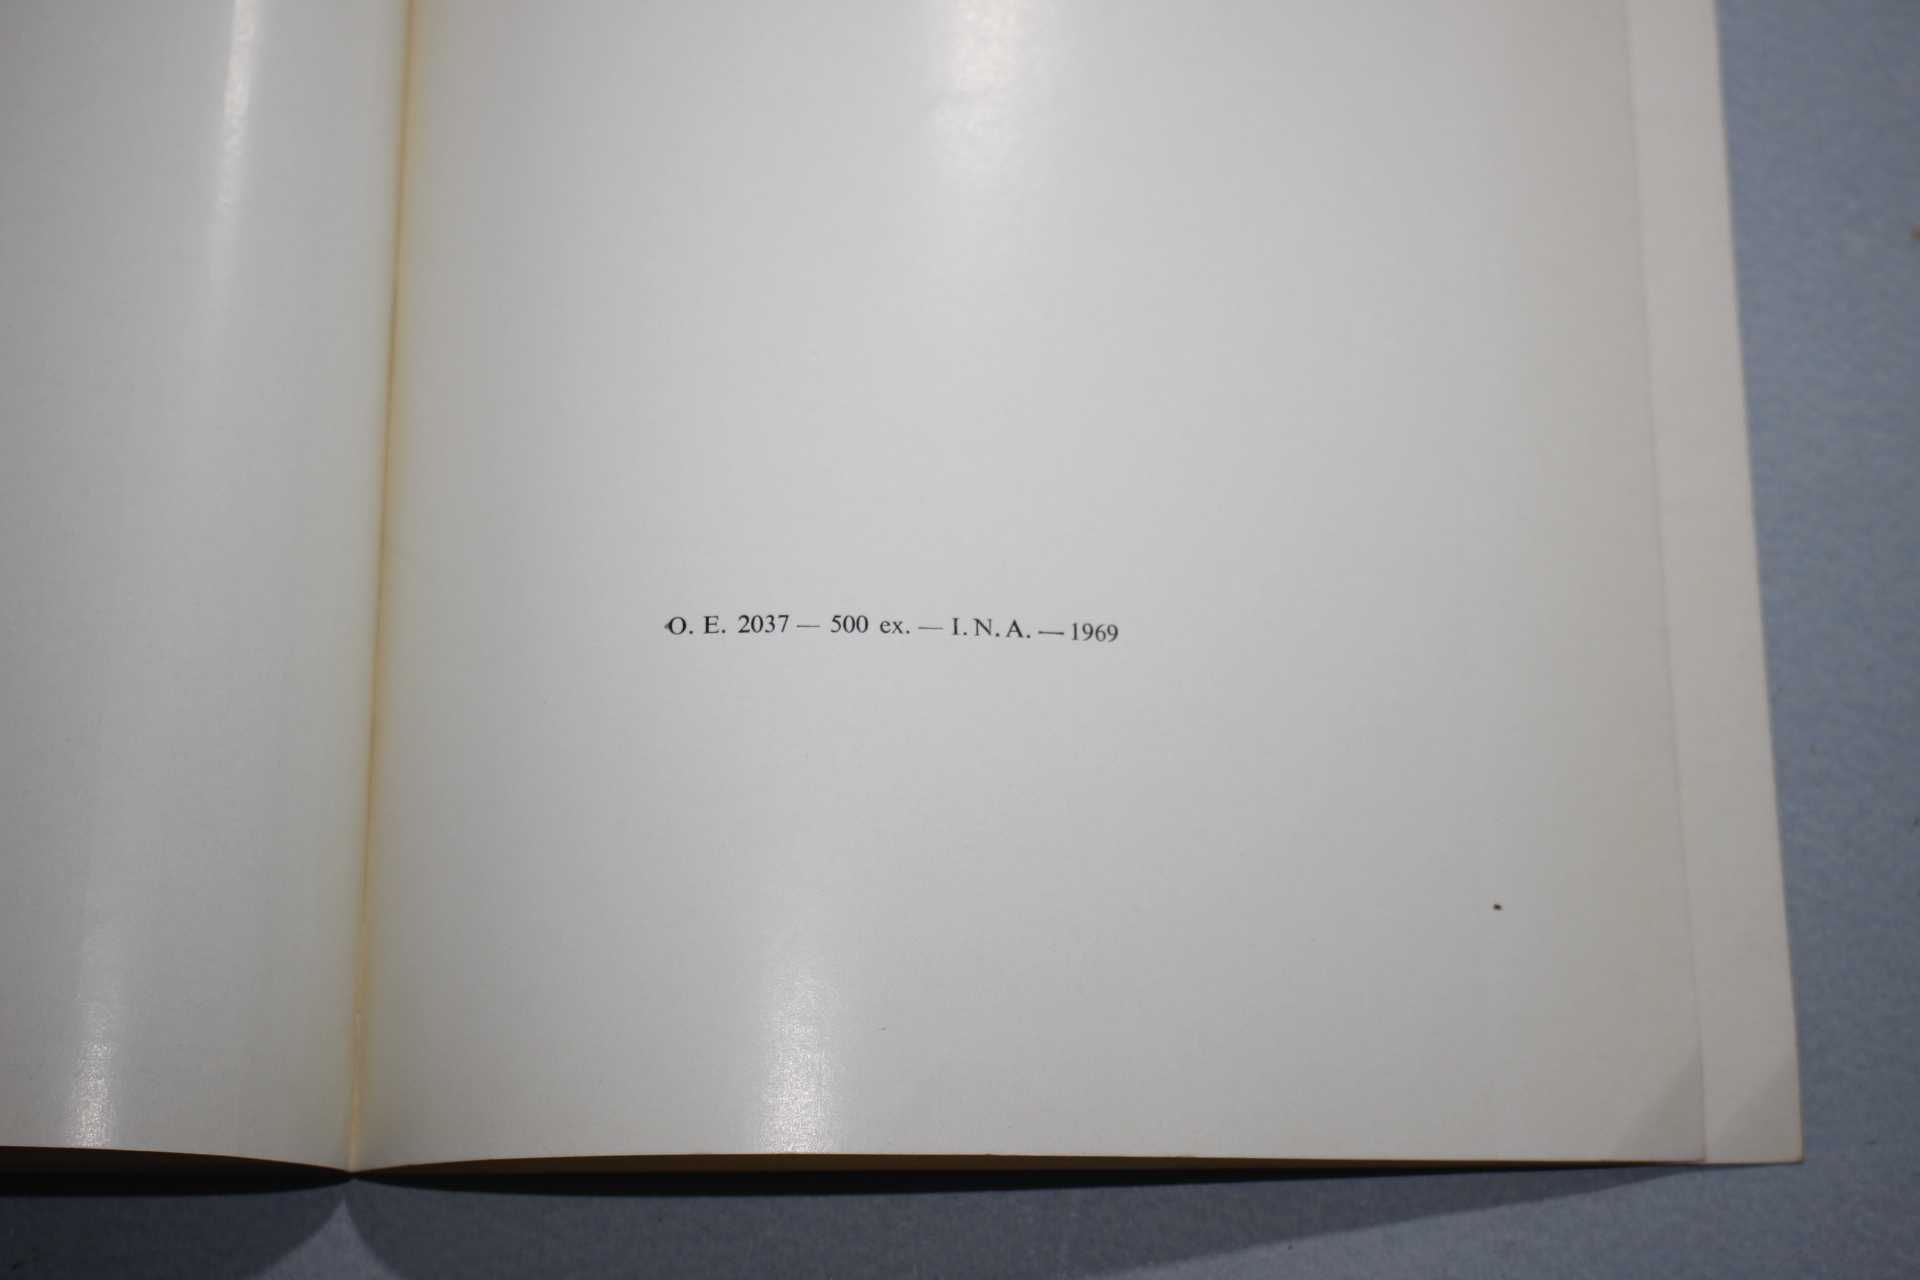 Livro-V Centenario Nascimento Vasco da Gama-Dia da Marinha 1969-Angola